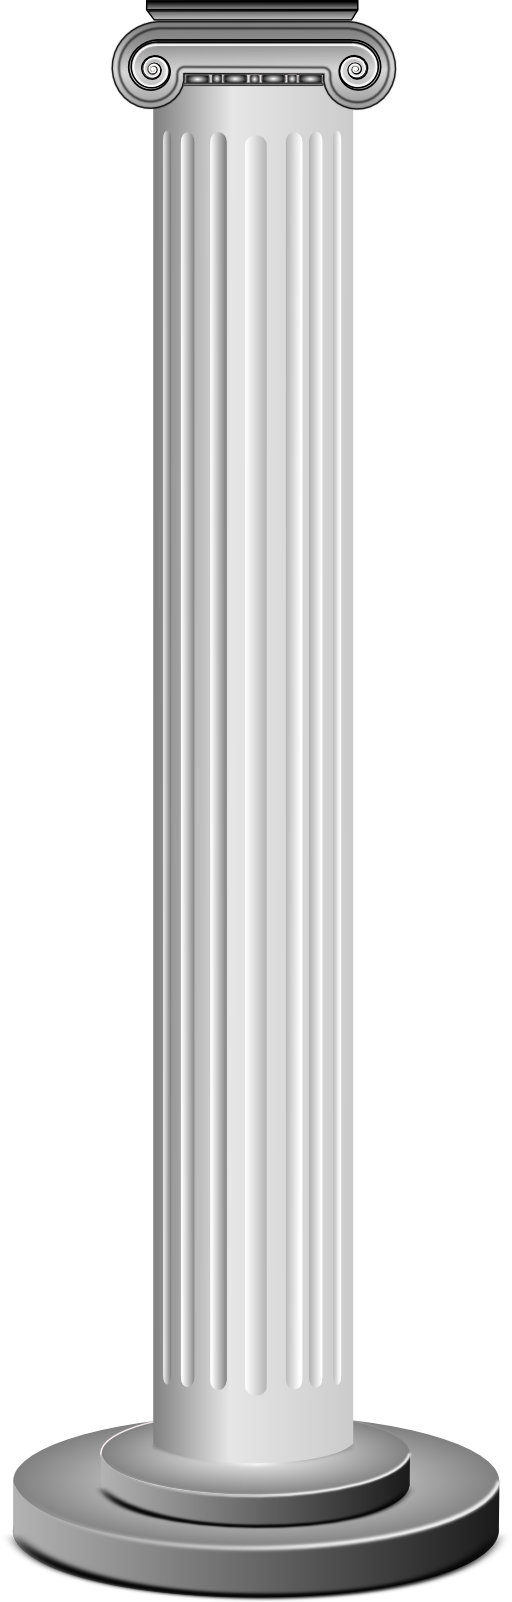 Pillars Clip Art Column Clipart